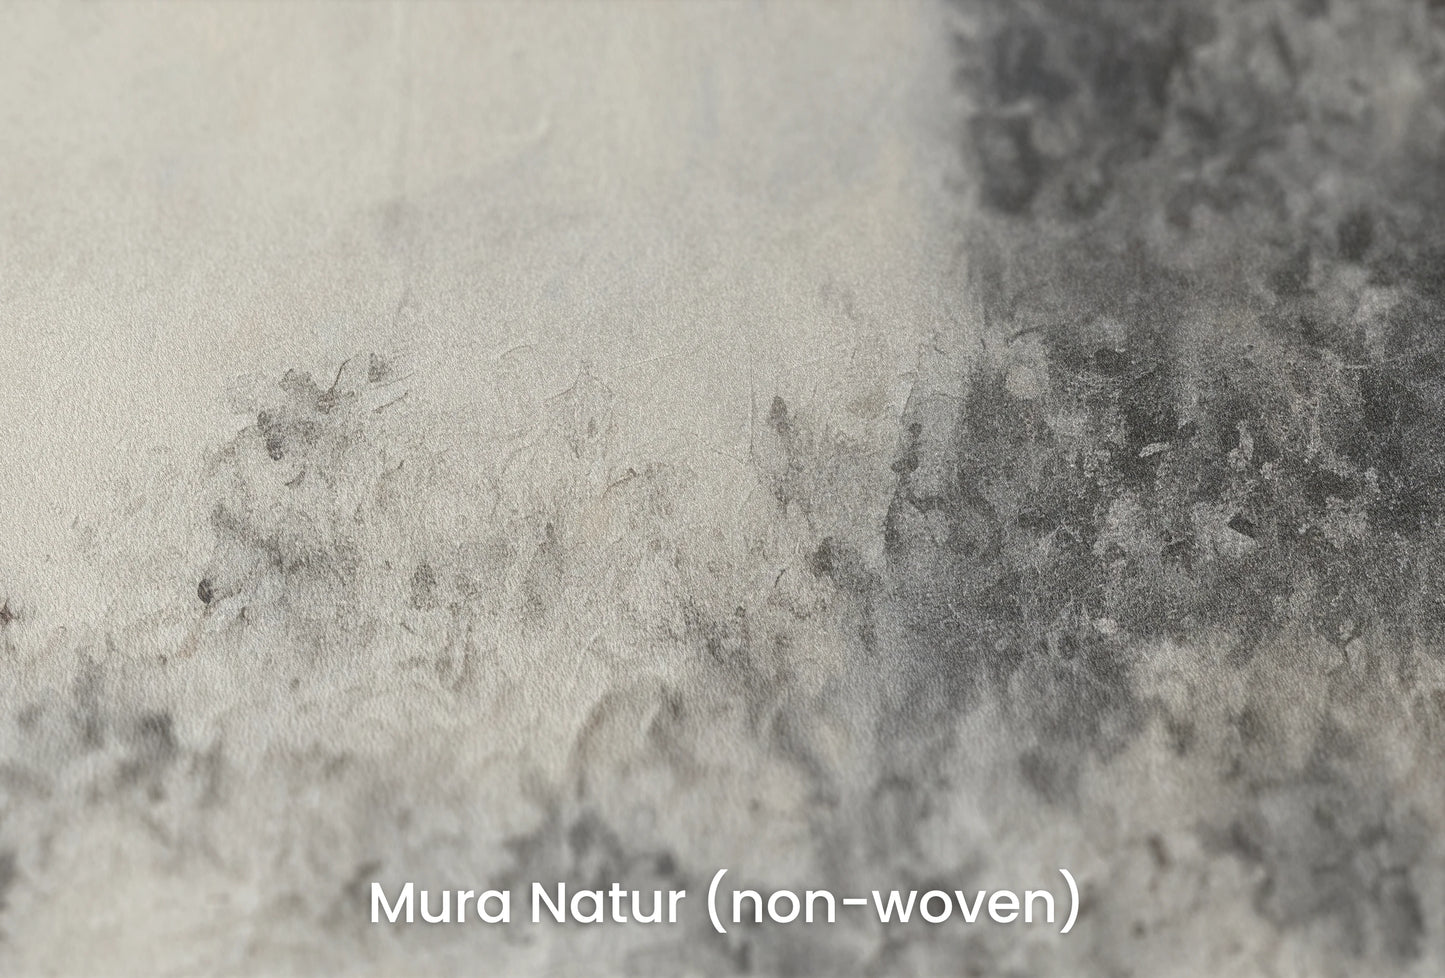 Zbliżenie na artystyczną fototapetę o nazwie Full Moon Calm na podłożu Mura Natur (non-woven) - naturalne i ekologiczne podłoże.